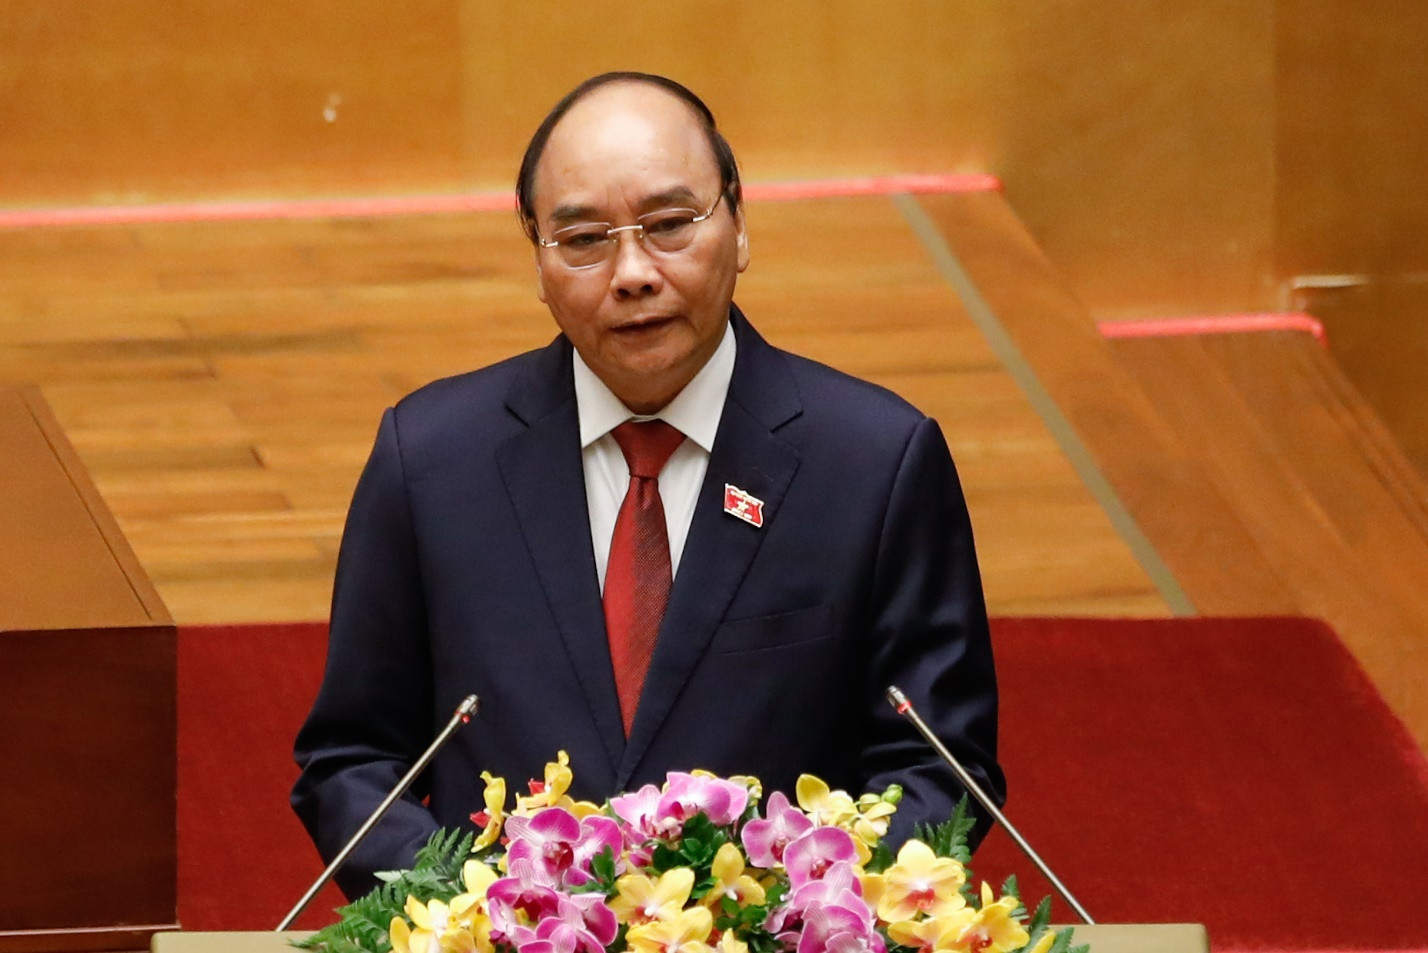 Tân Chủ tịch nước: May mắn, vinh dự được tiếp nối những thành quả quan trọng của Tổng Bí thư Nguyễn Phú Trọng - Ảnh 2.